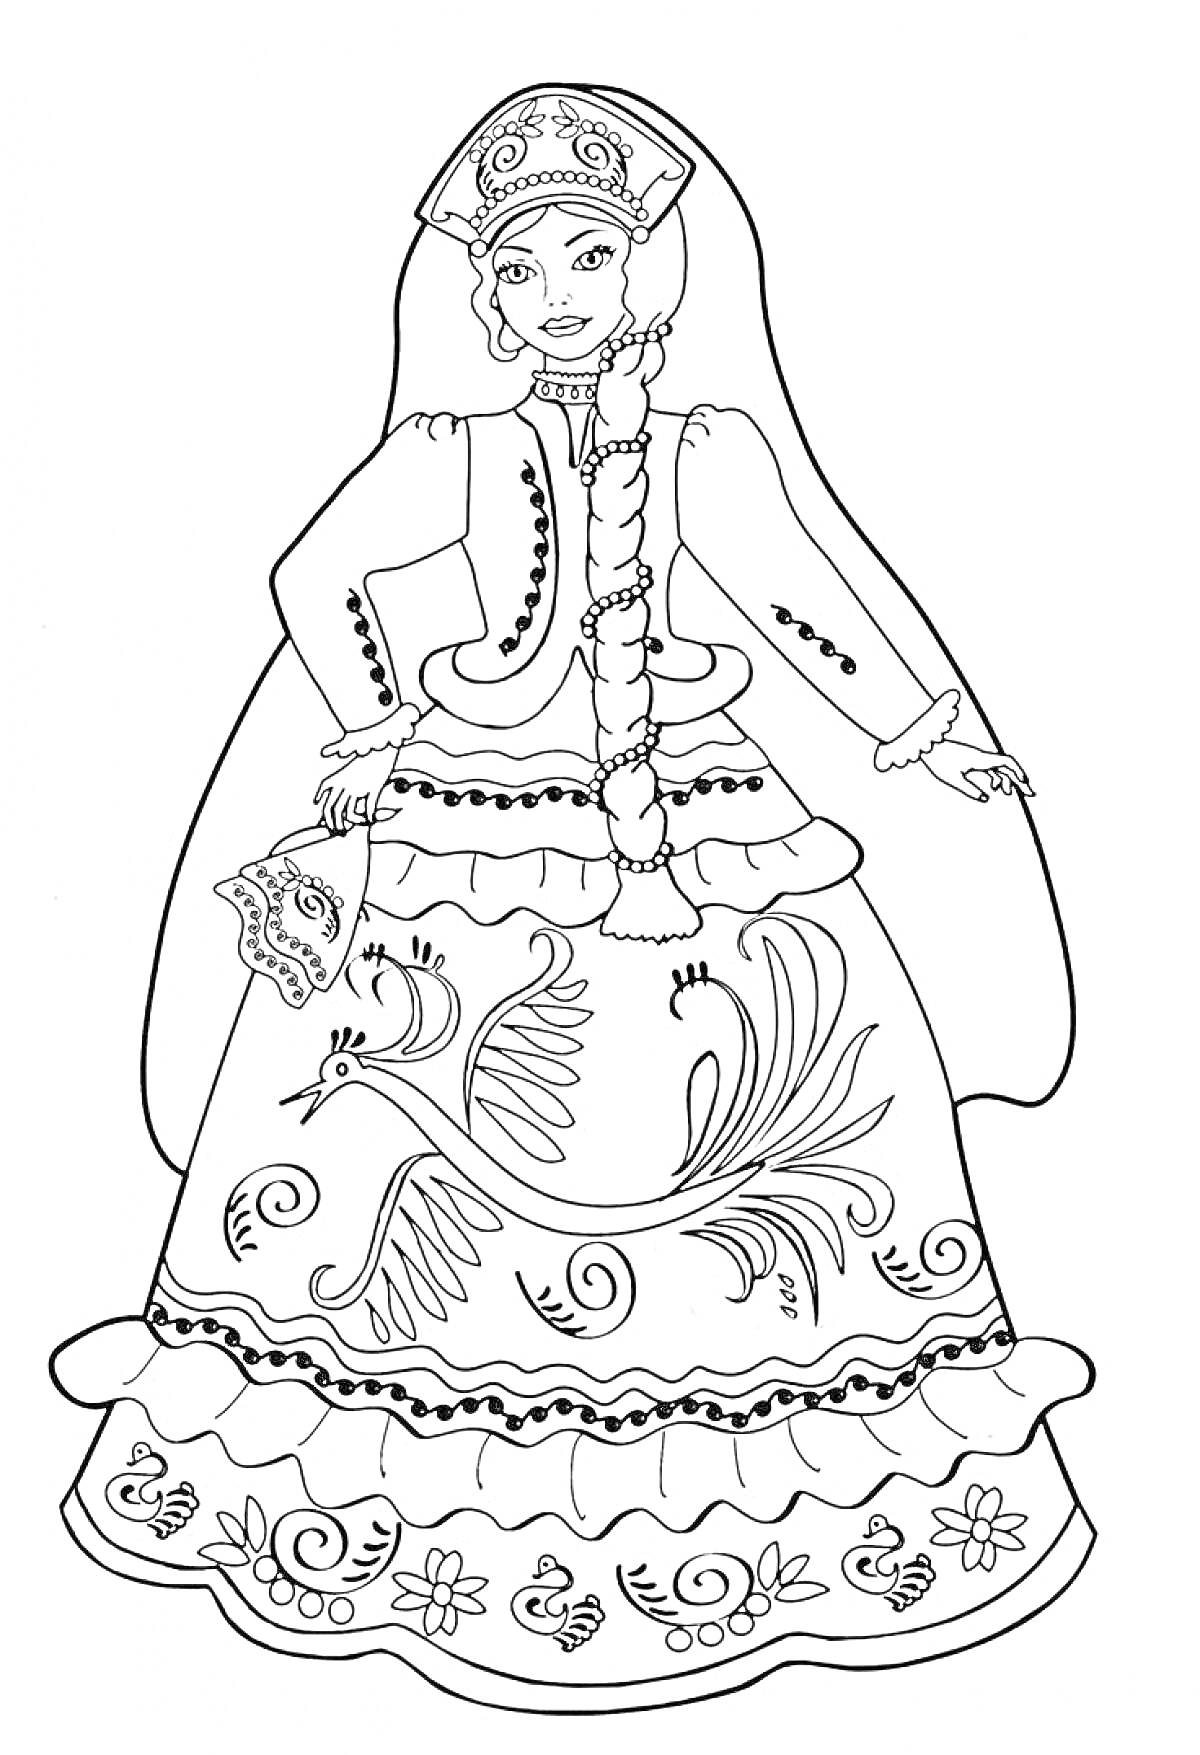 Девушка в русском народном костюме с кокошником, сарафаном, поясом, косой и вышивкой